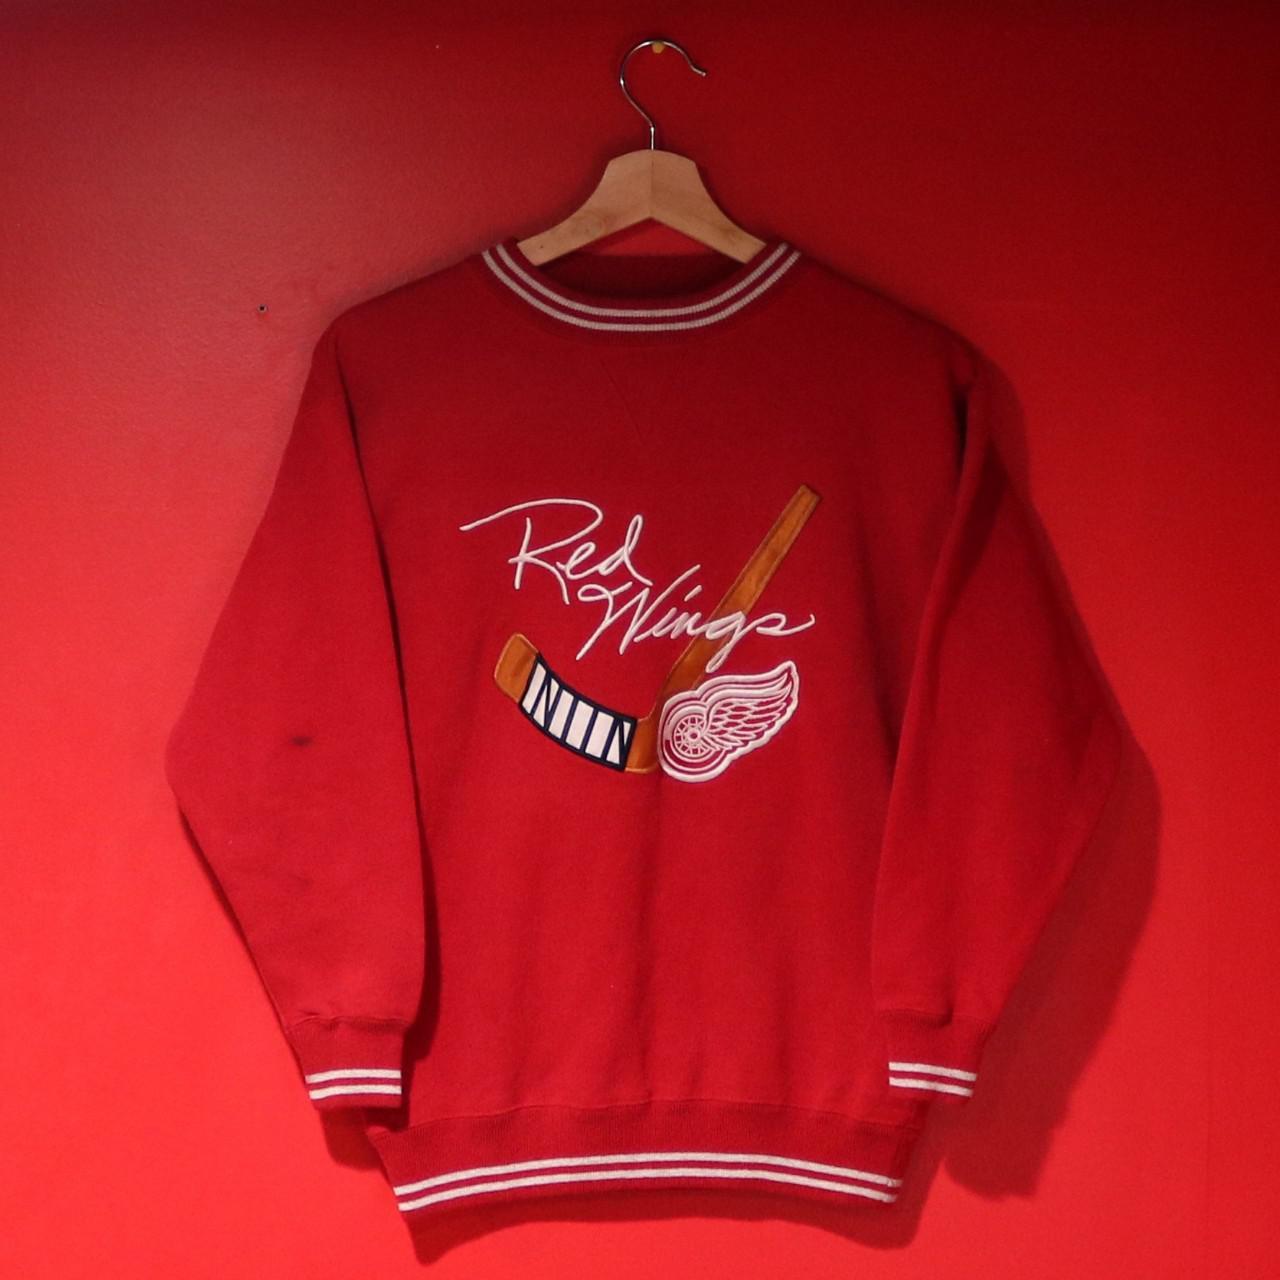 Vintage 1990s NHL Detroit Red Wings Sweatshirt... - Depop